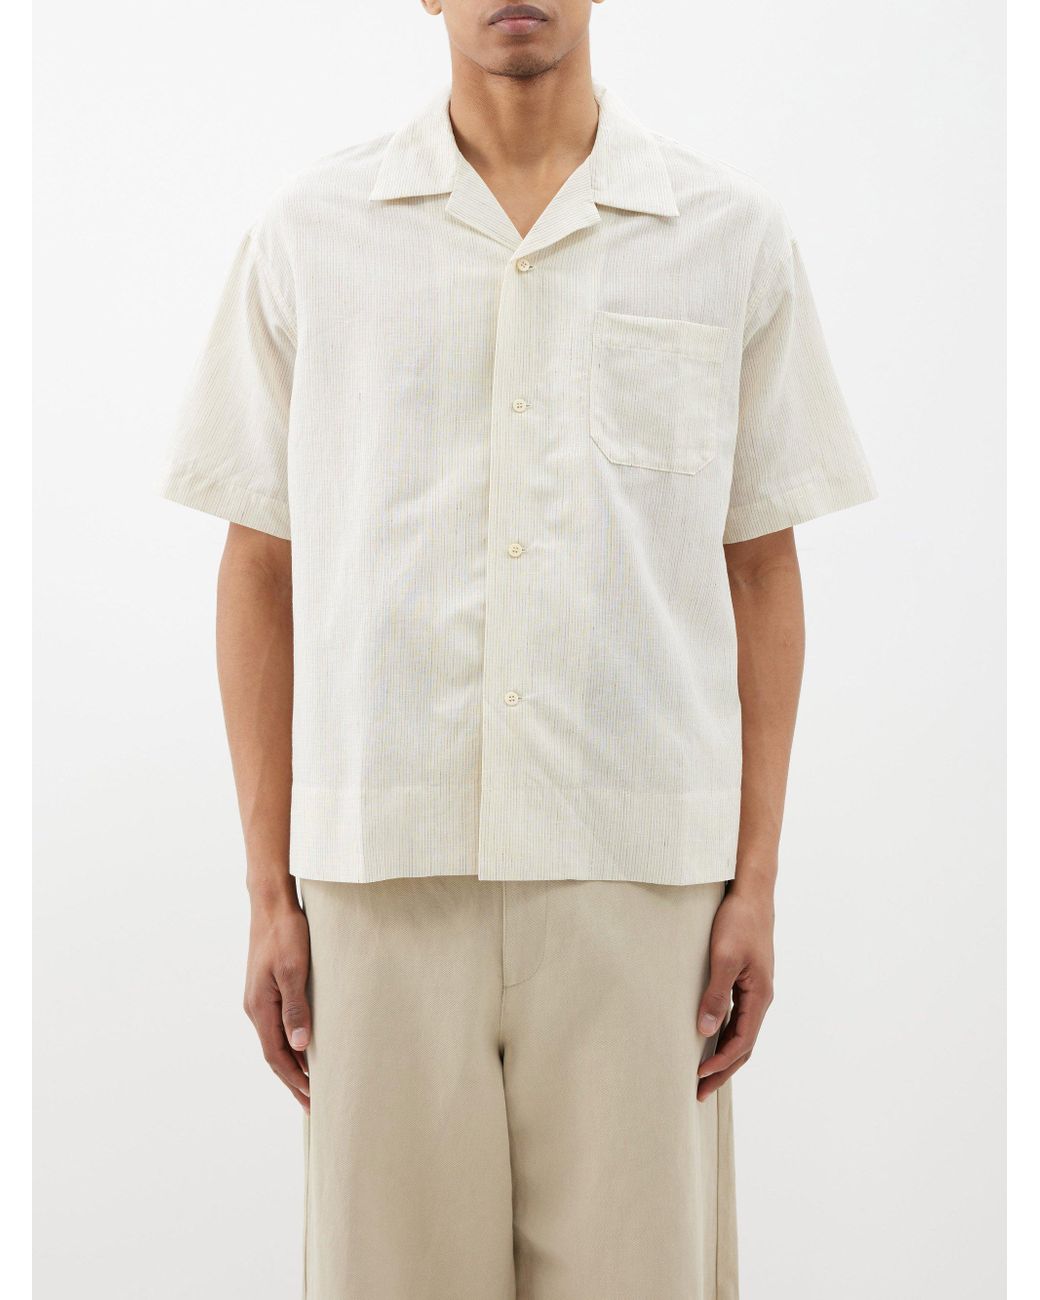 Visvim Copa Striped Wool-blend Shirt in White for Men | Lyst Australia